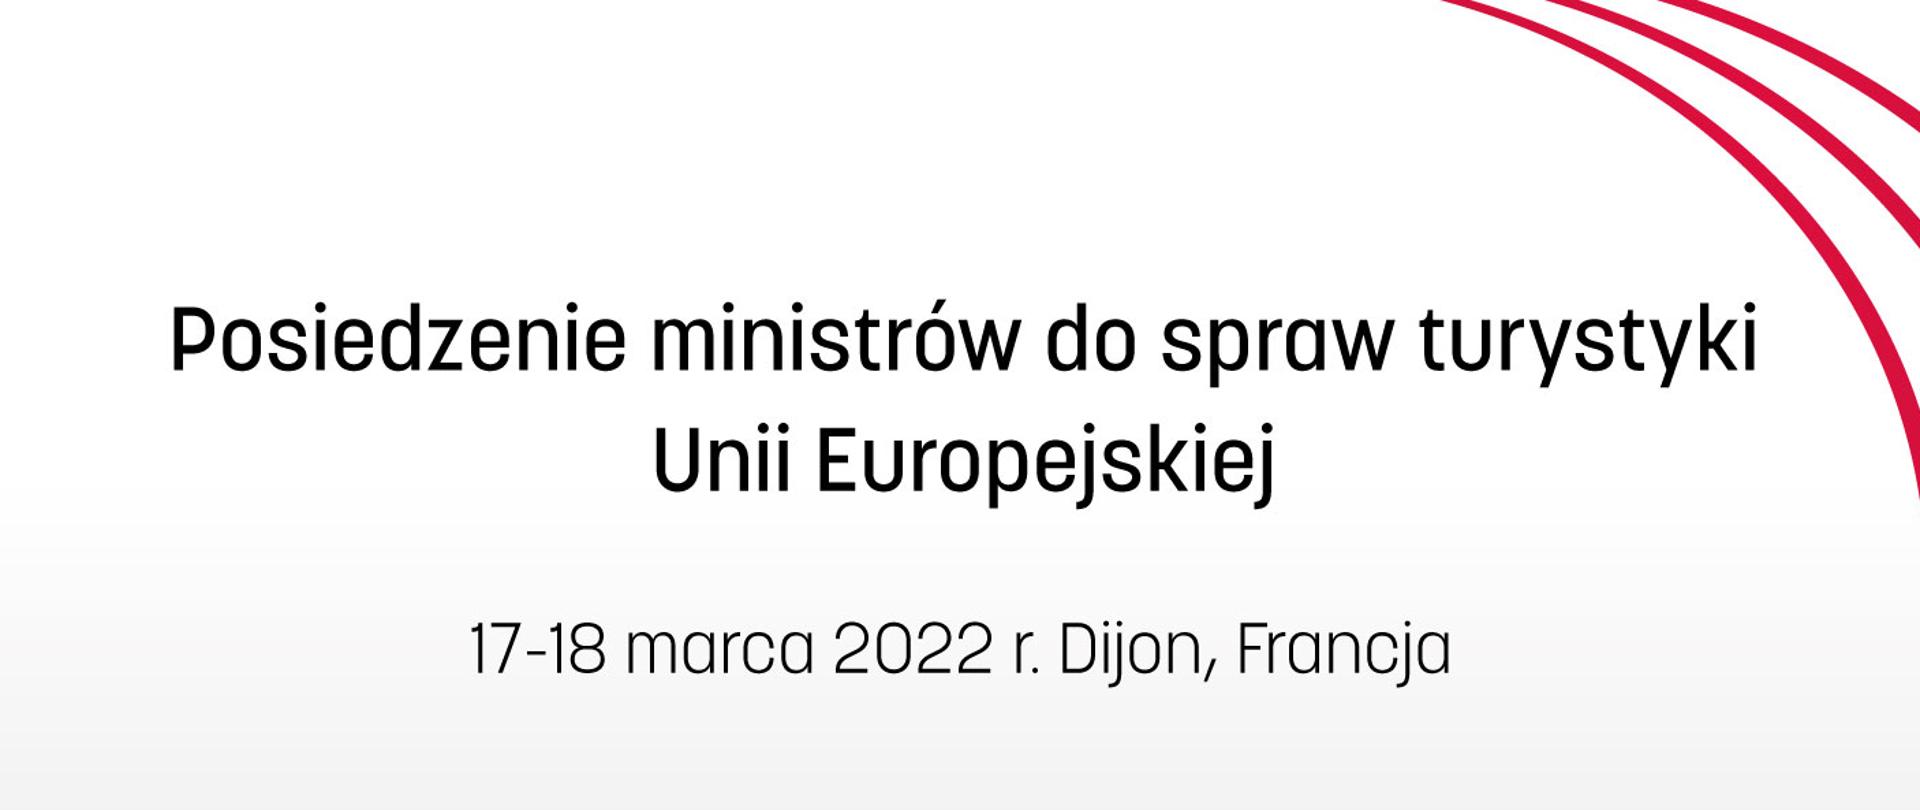 Grafika z napisem: Posiedzenie ministrów do spraw turystyki Unii Europejskiej